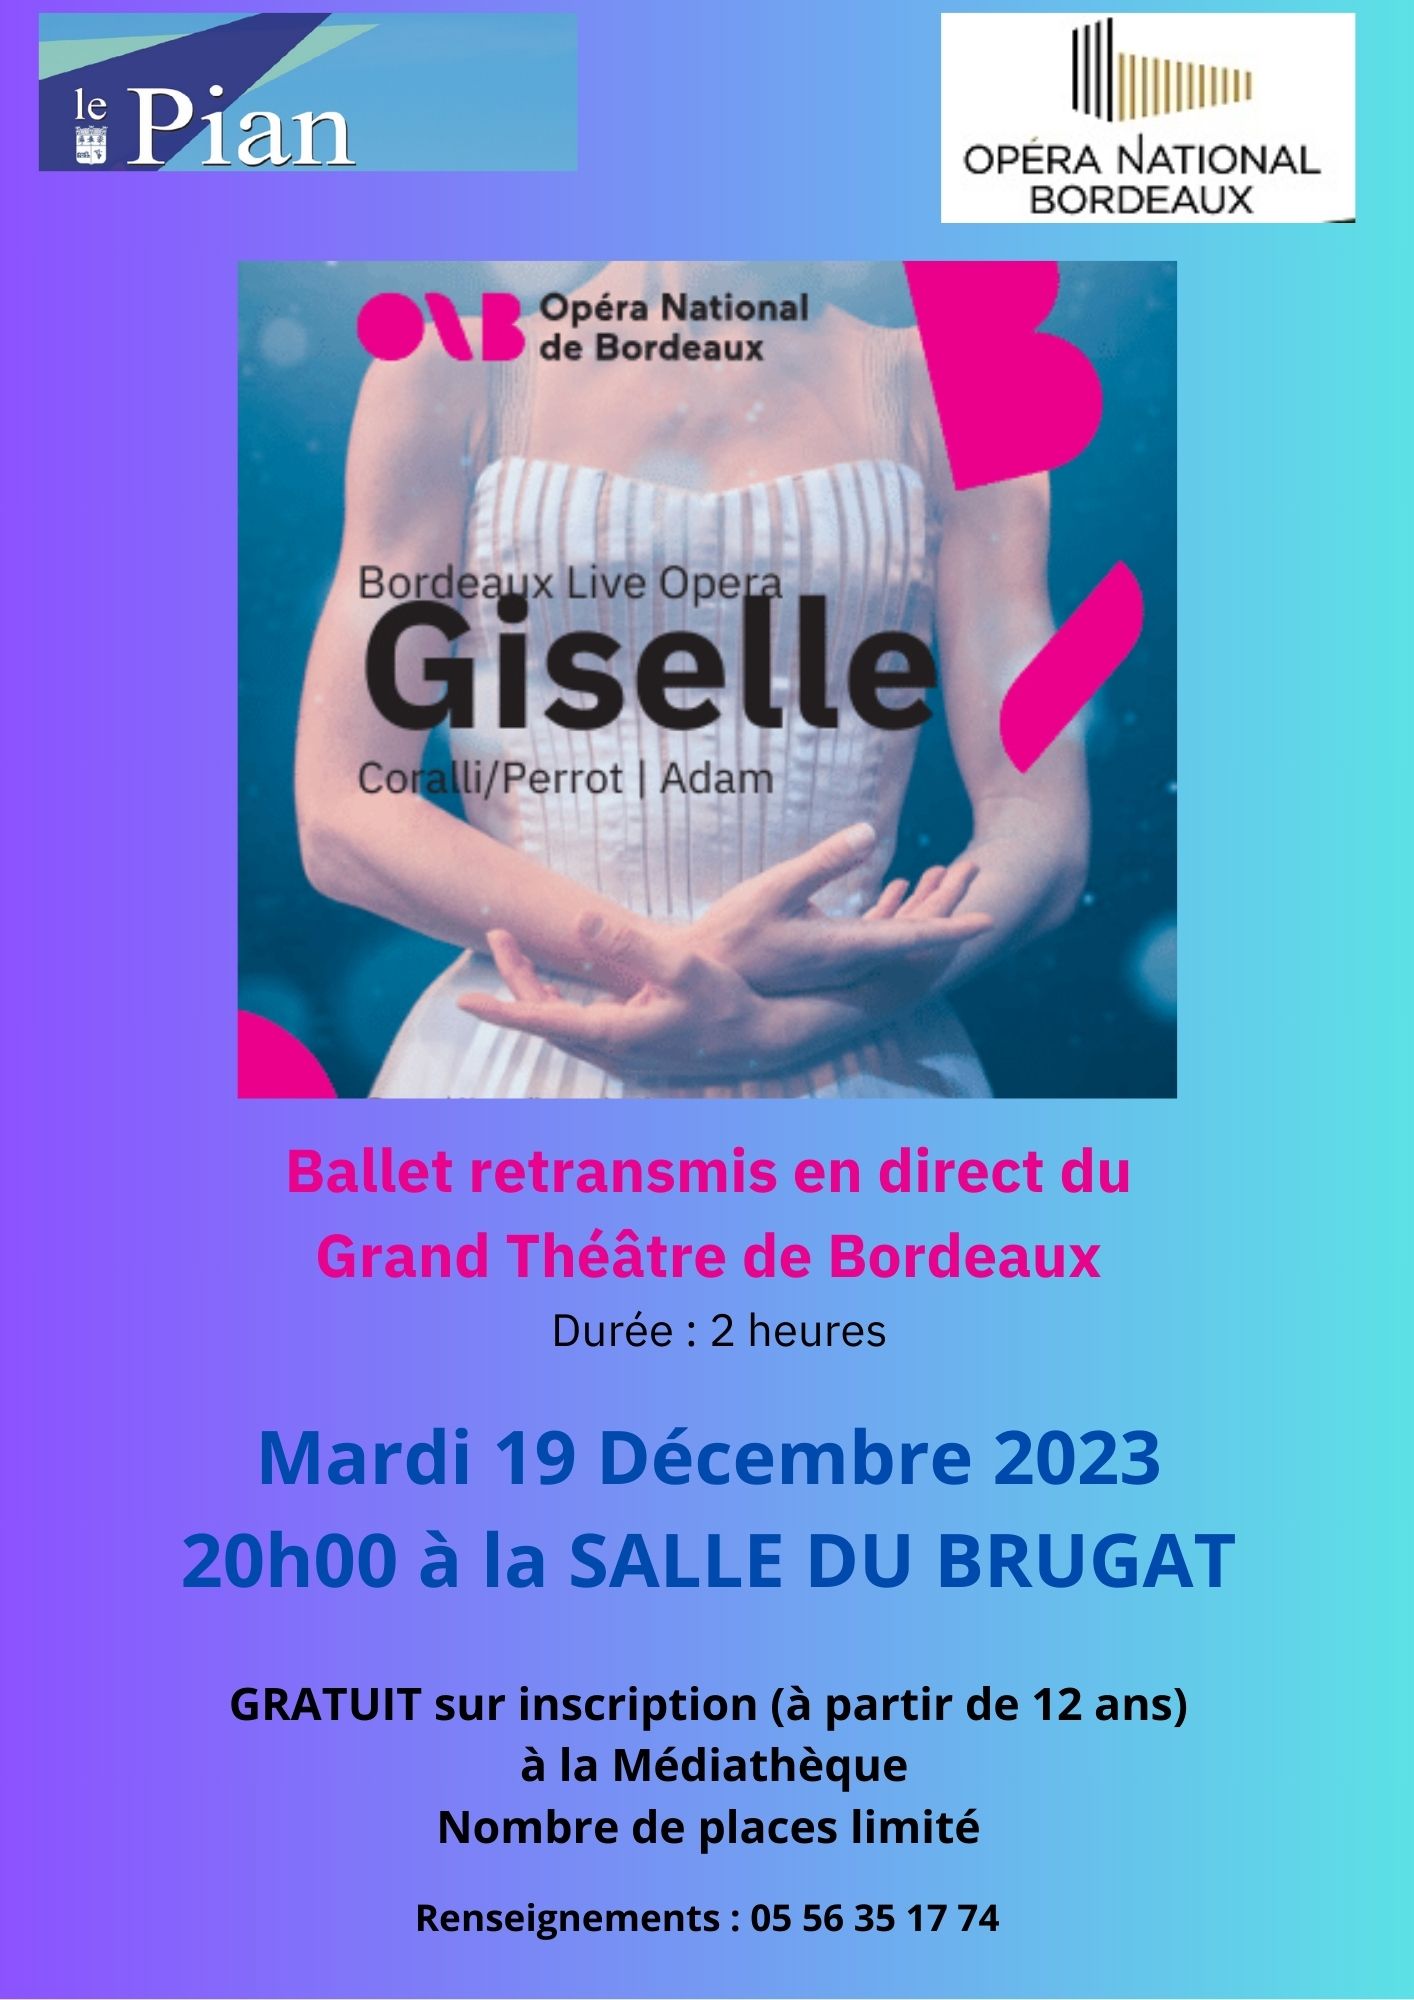 Retransmission du Ballet Giselle en direct du Grand Théâtre de Bordeaux